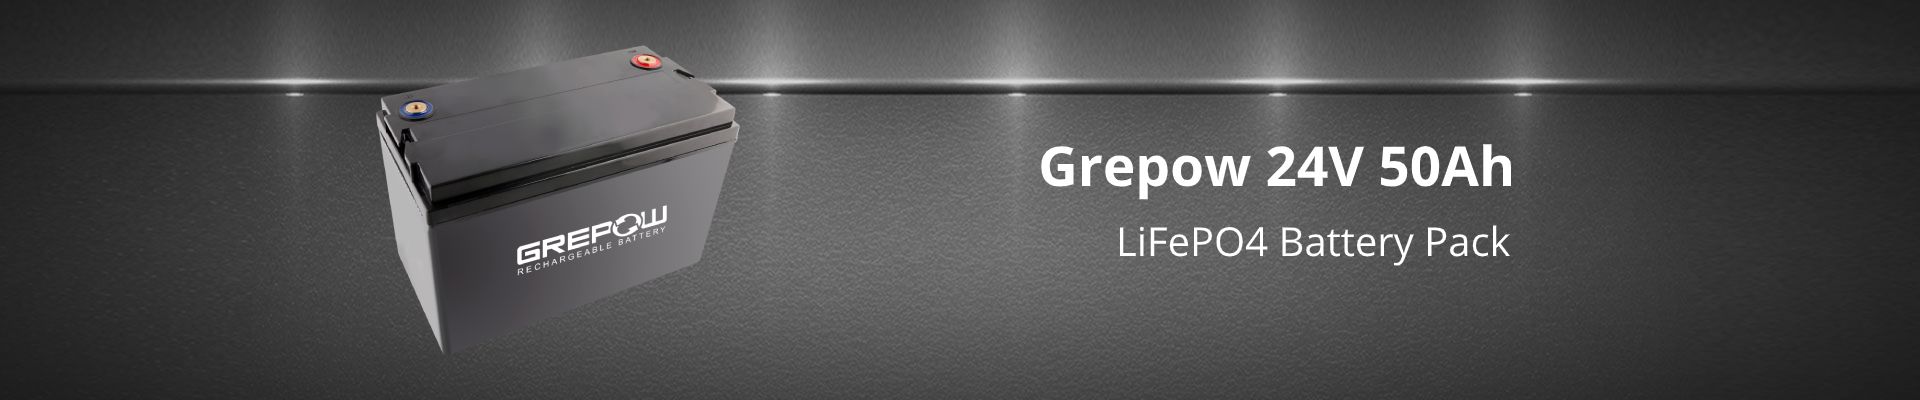 Grepow 24V 50Ah LiFePO4 battery pack banner